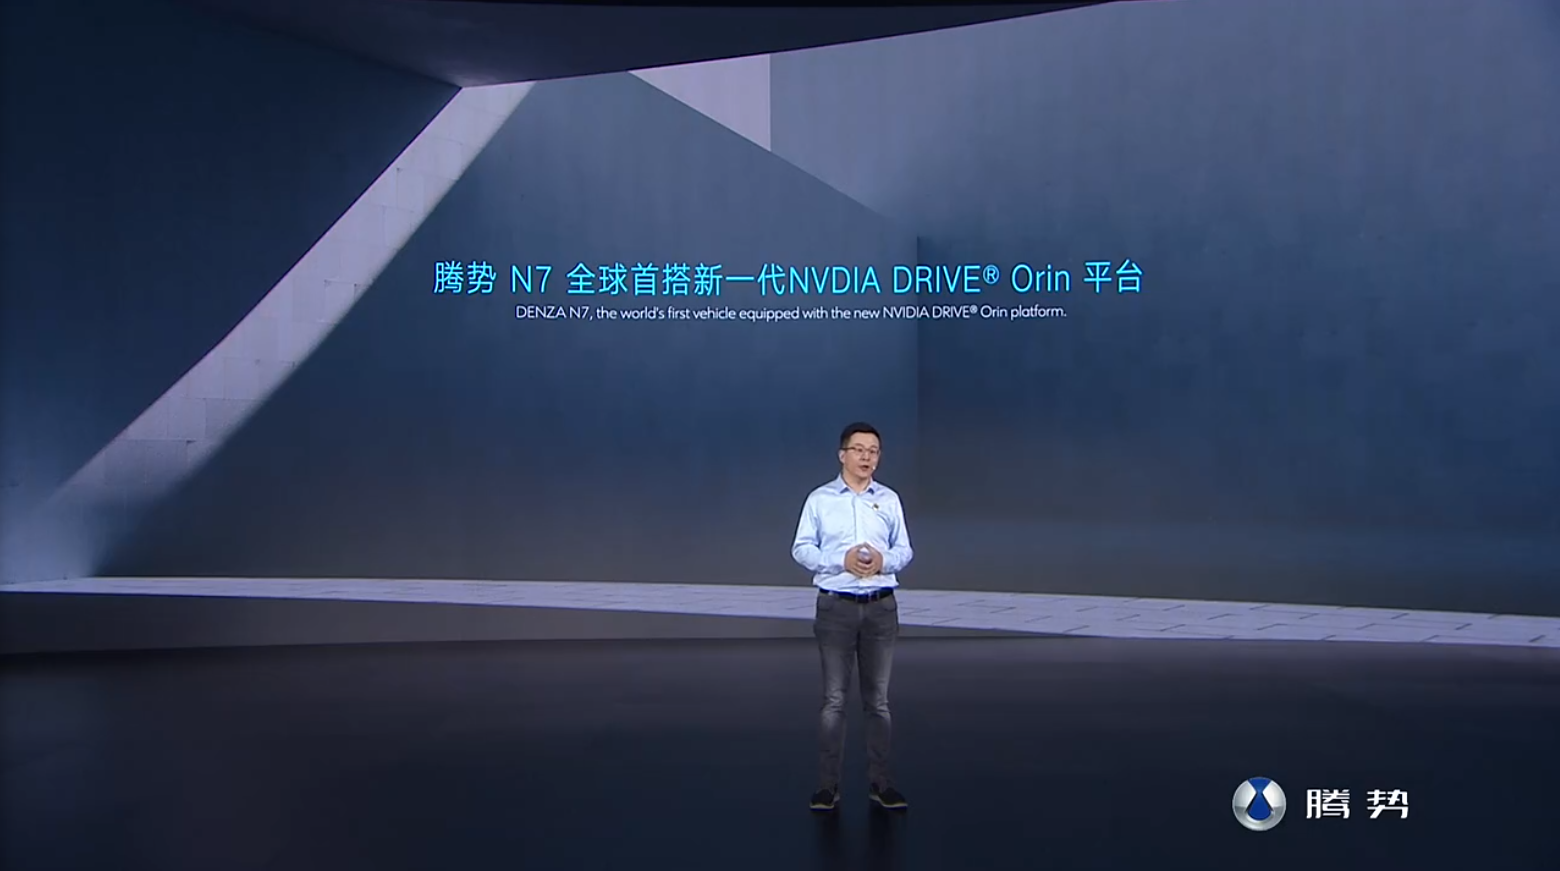 首搭NVIDIA DRIVE Orin平台，腾势N7发布新智驾包价格